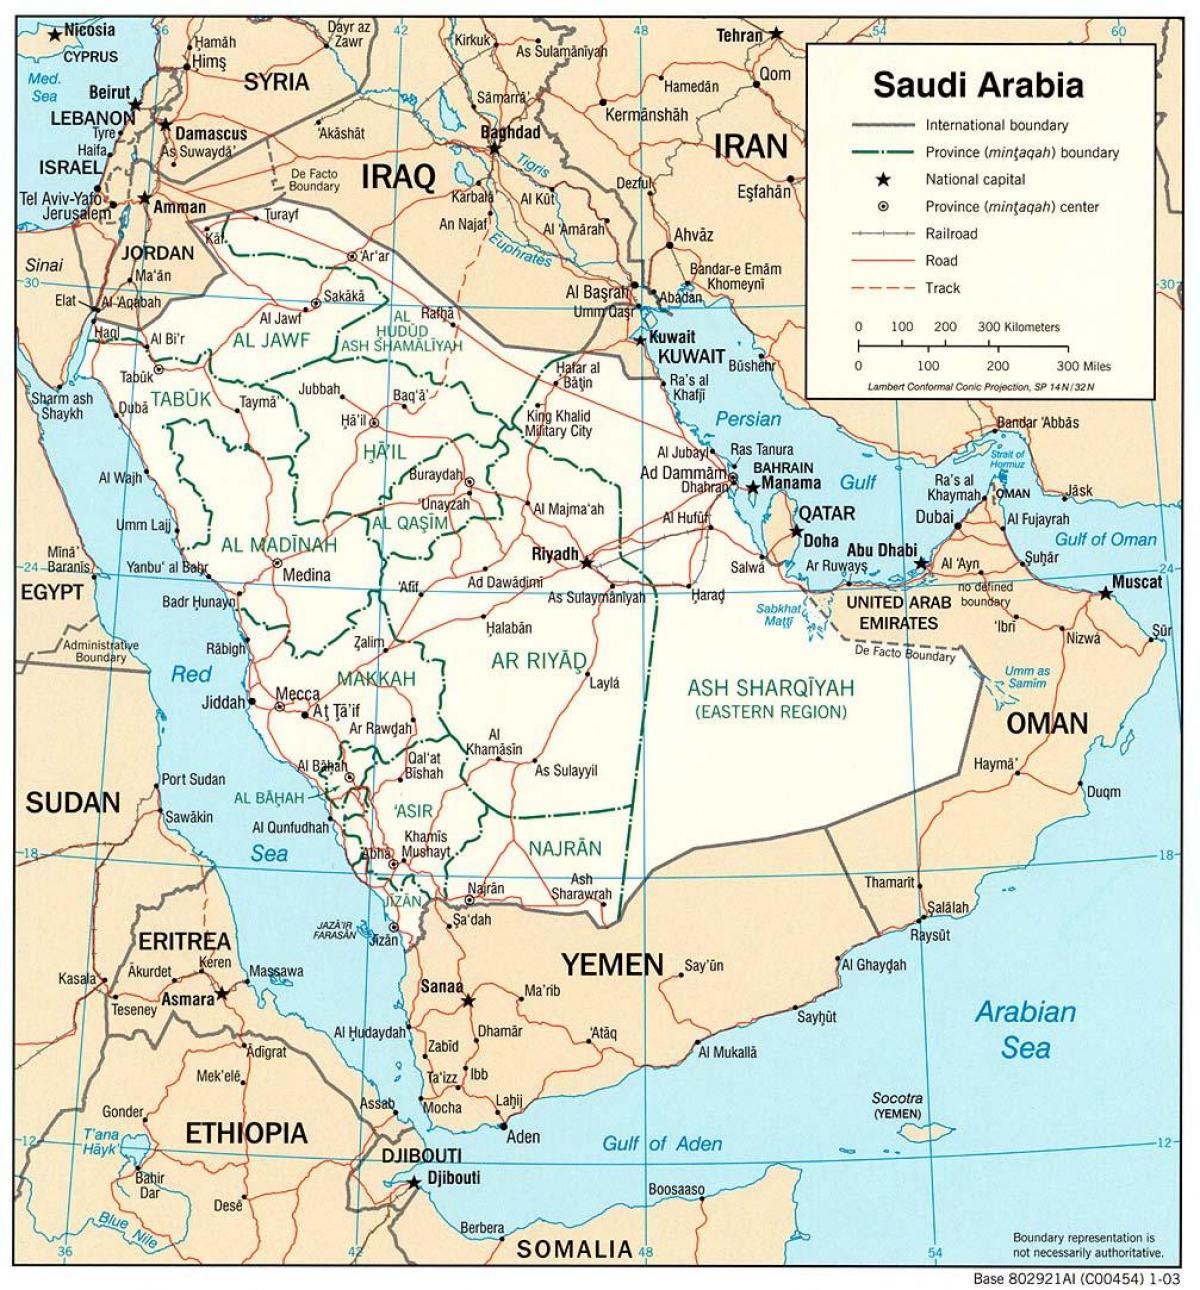 المملكة العربية السعودية خريطة كاملة